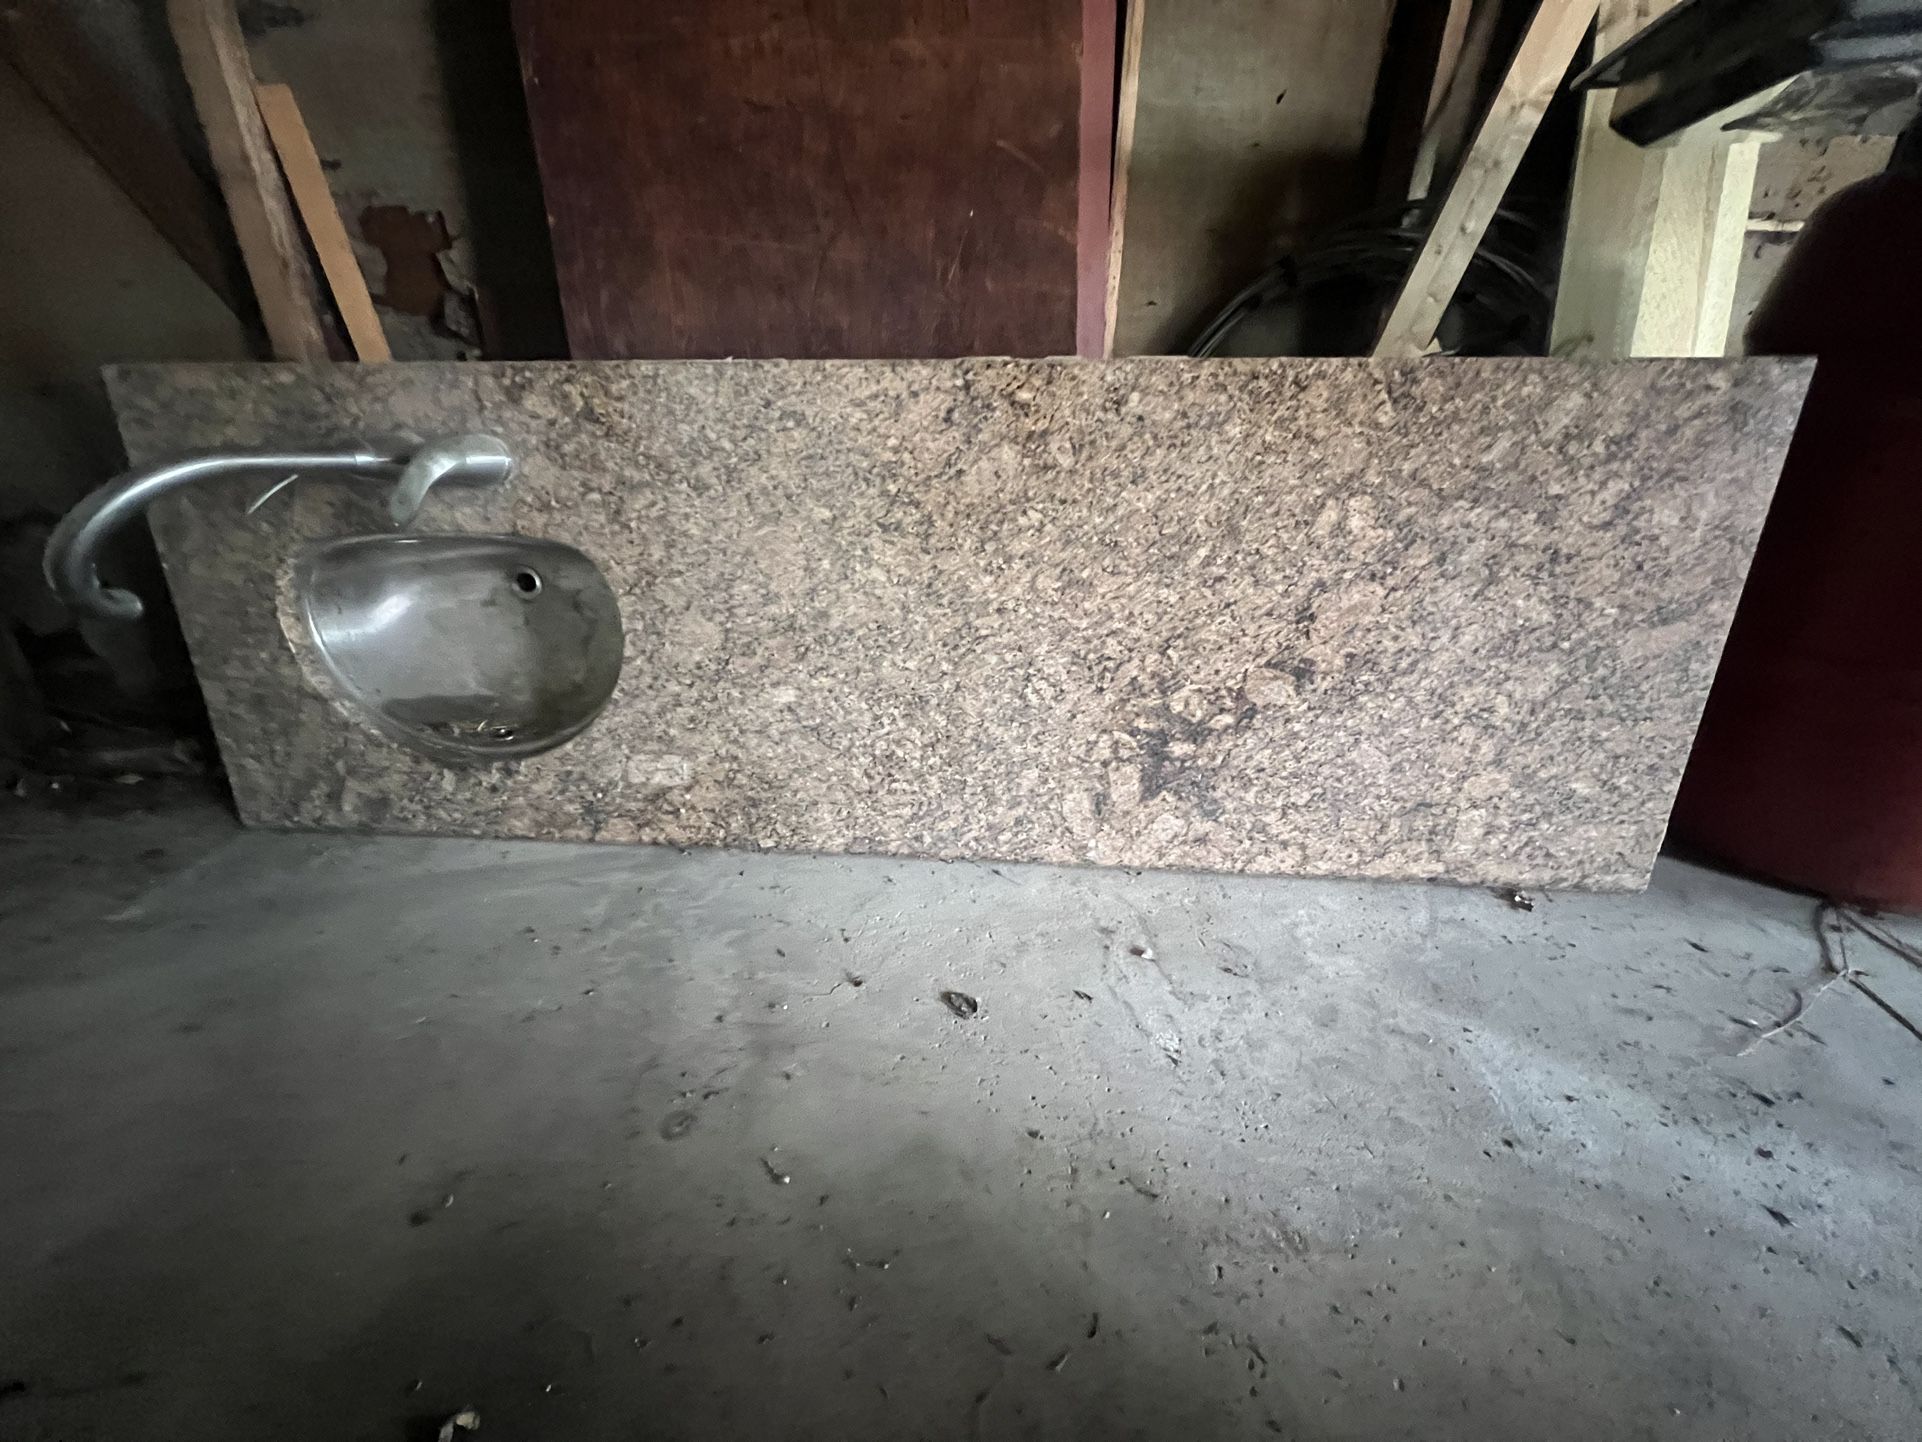 Countertop Granite